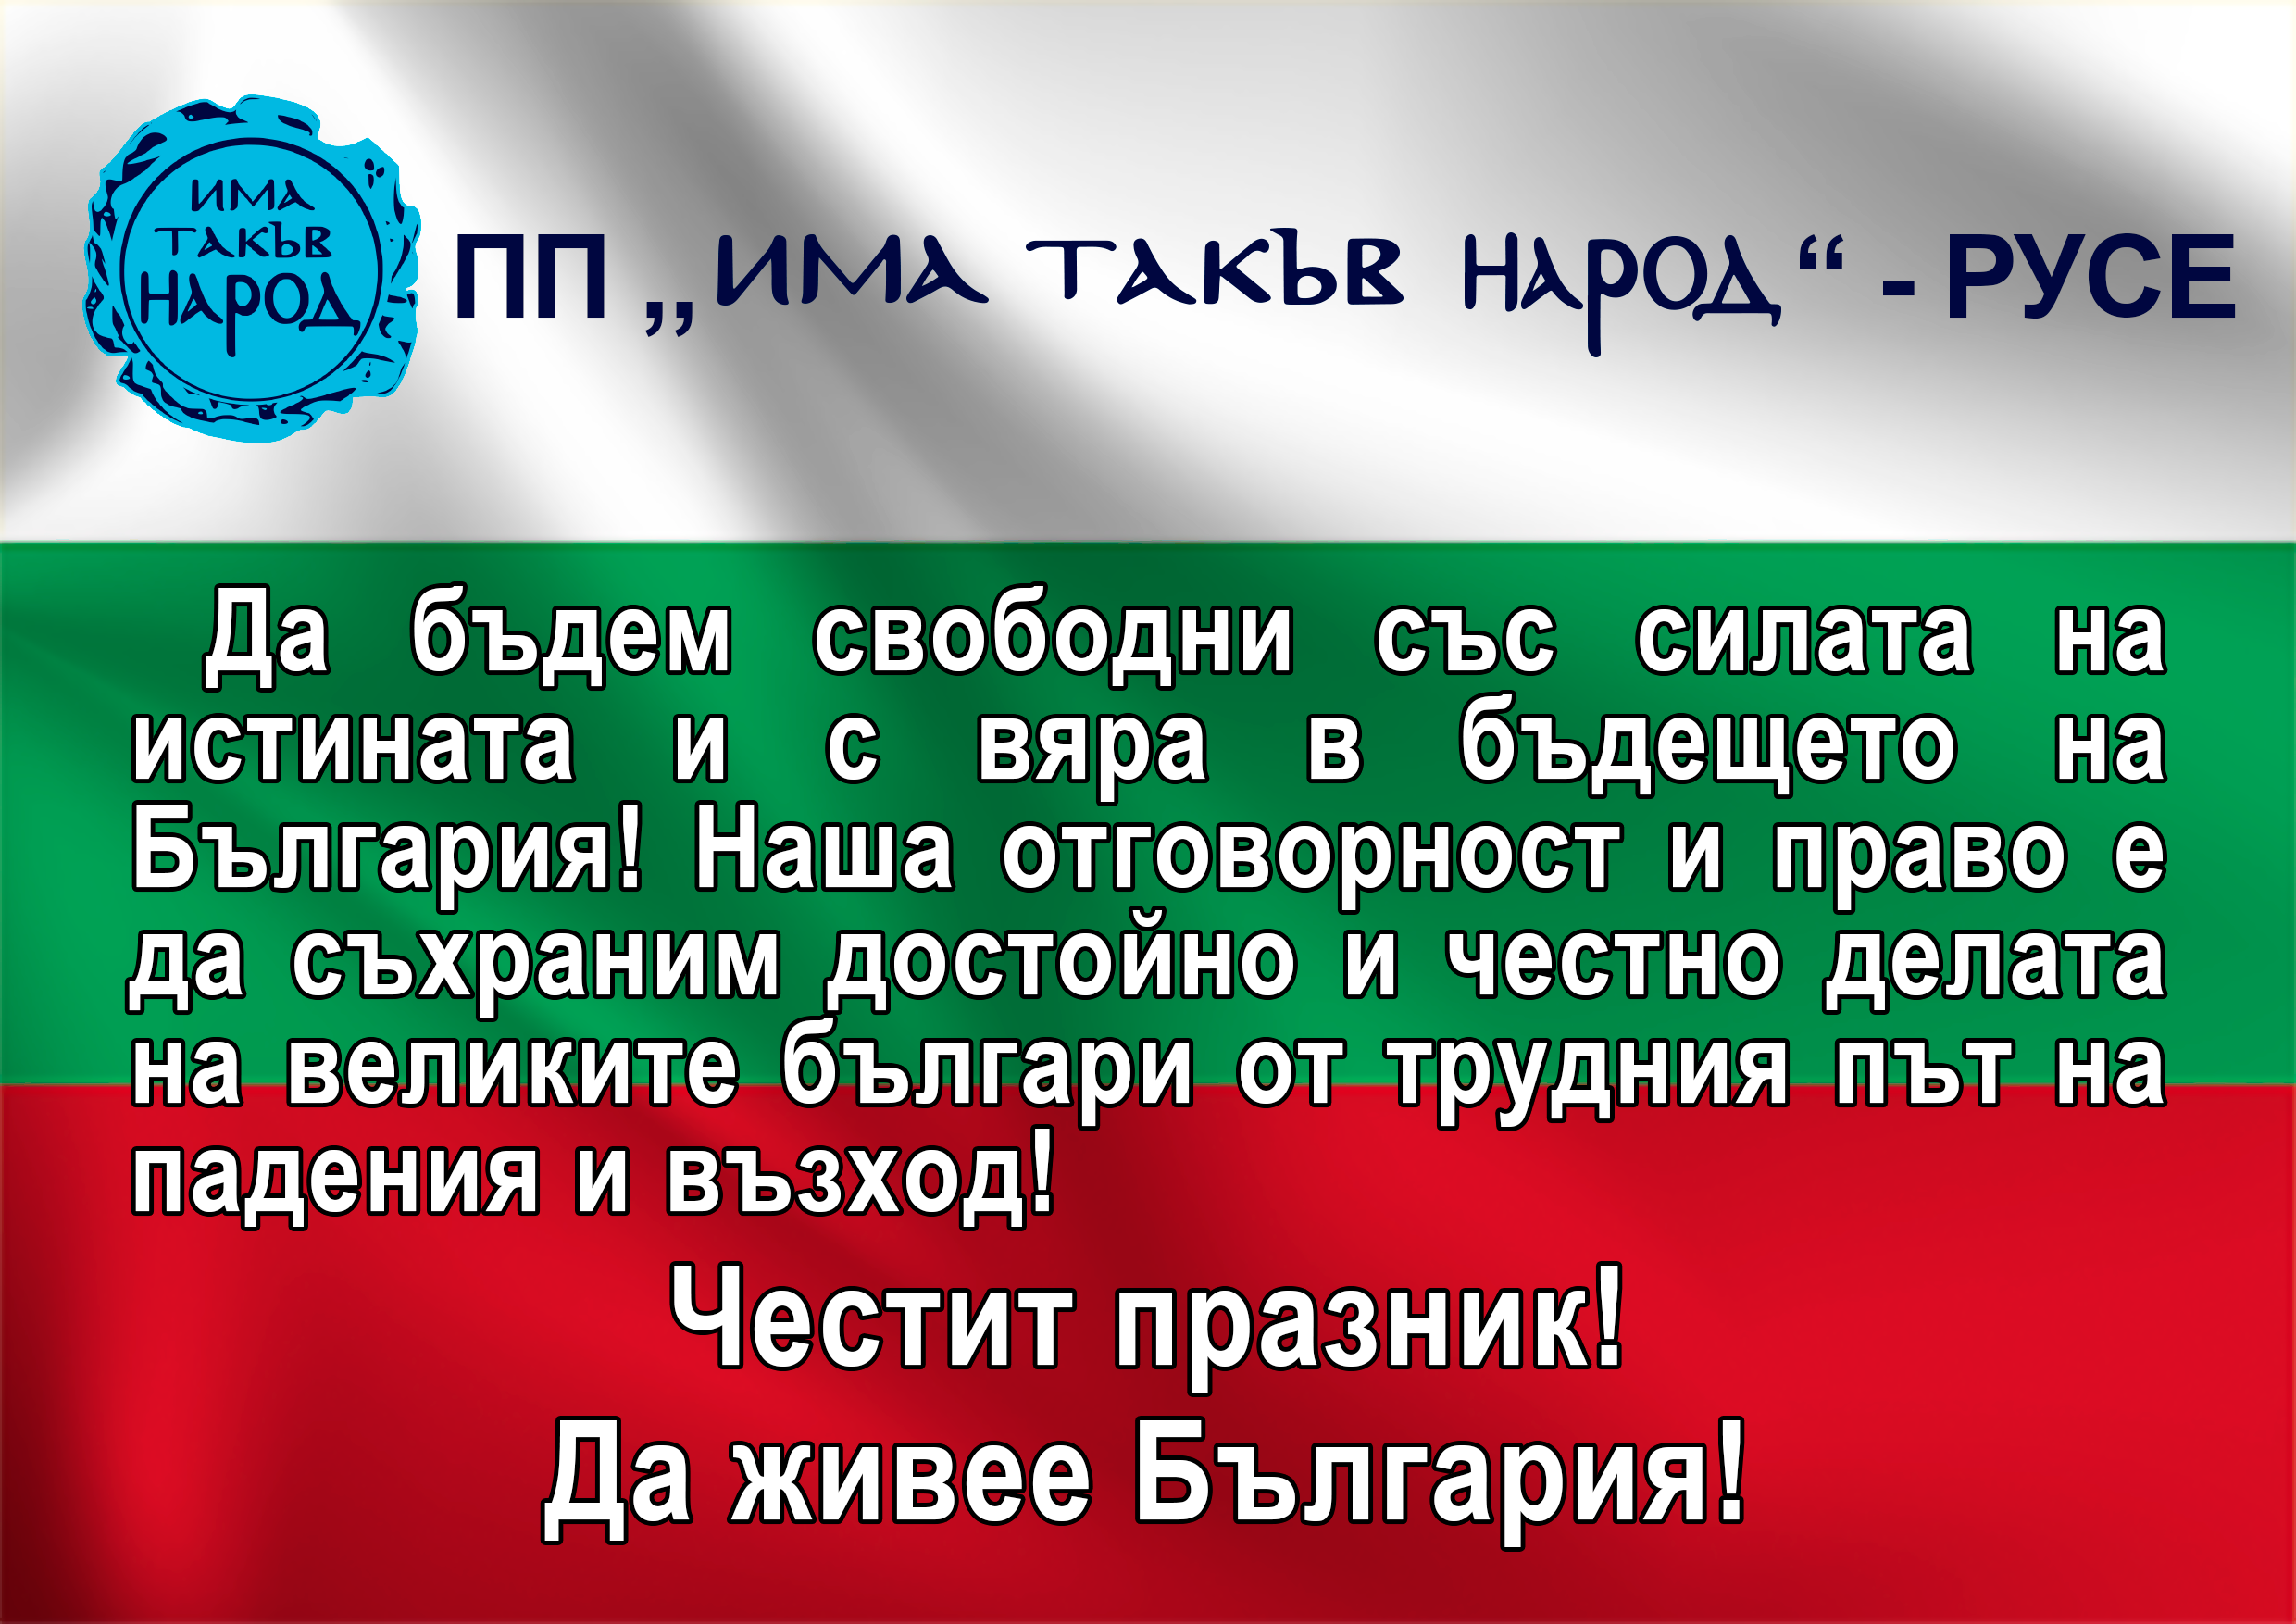 Честит празник! Да живее България!